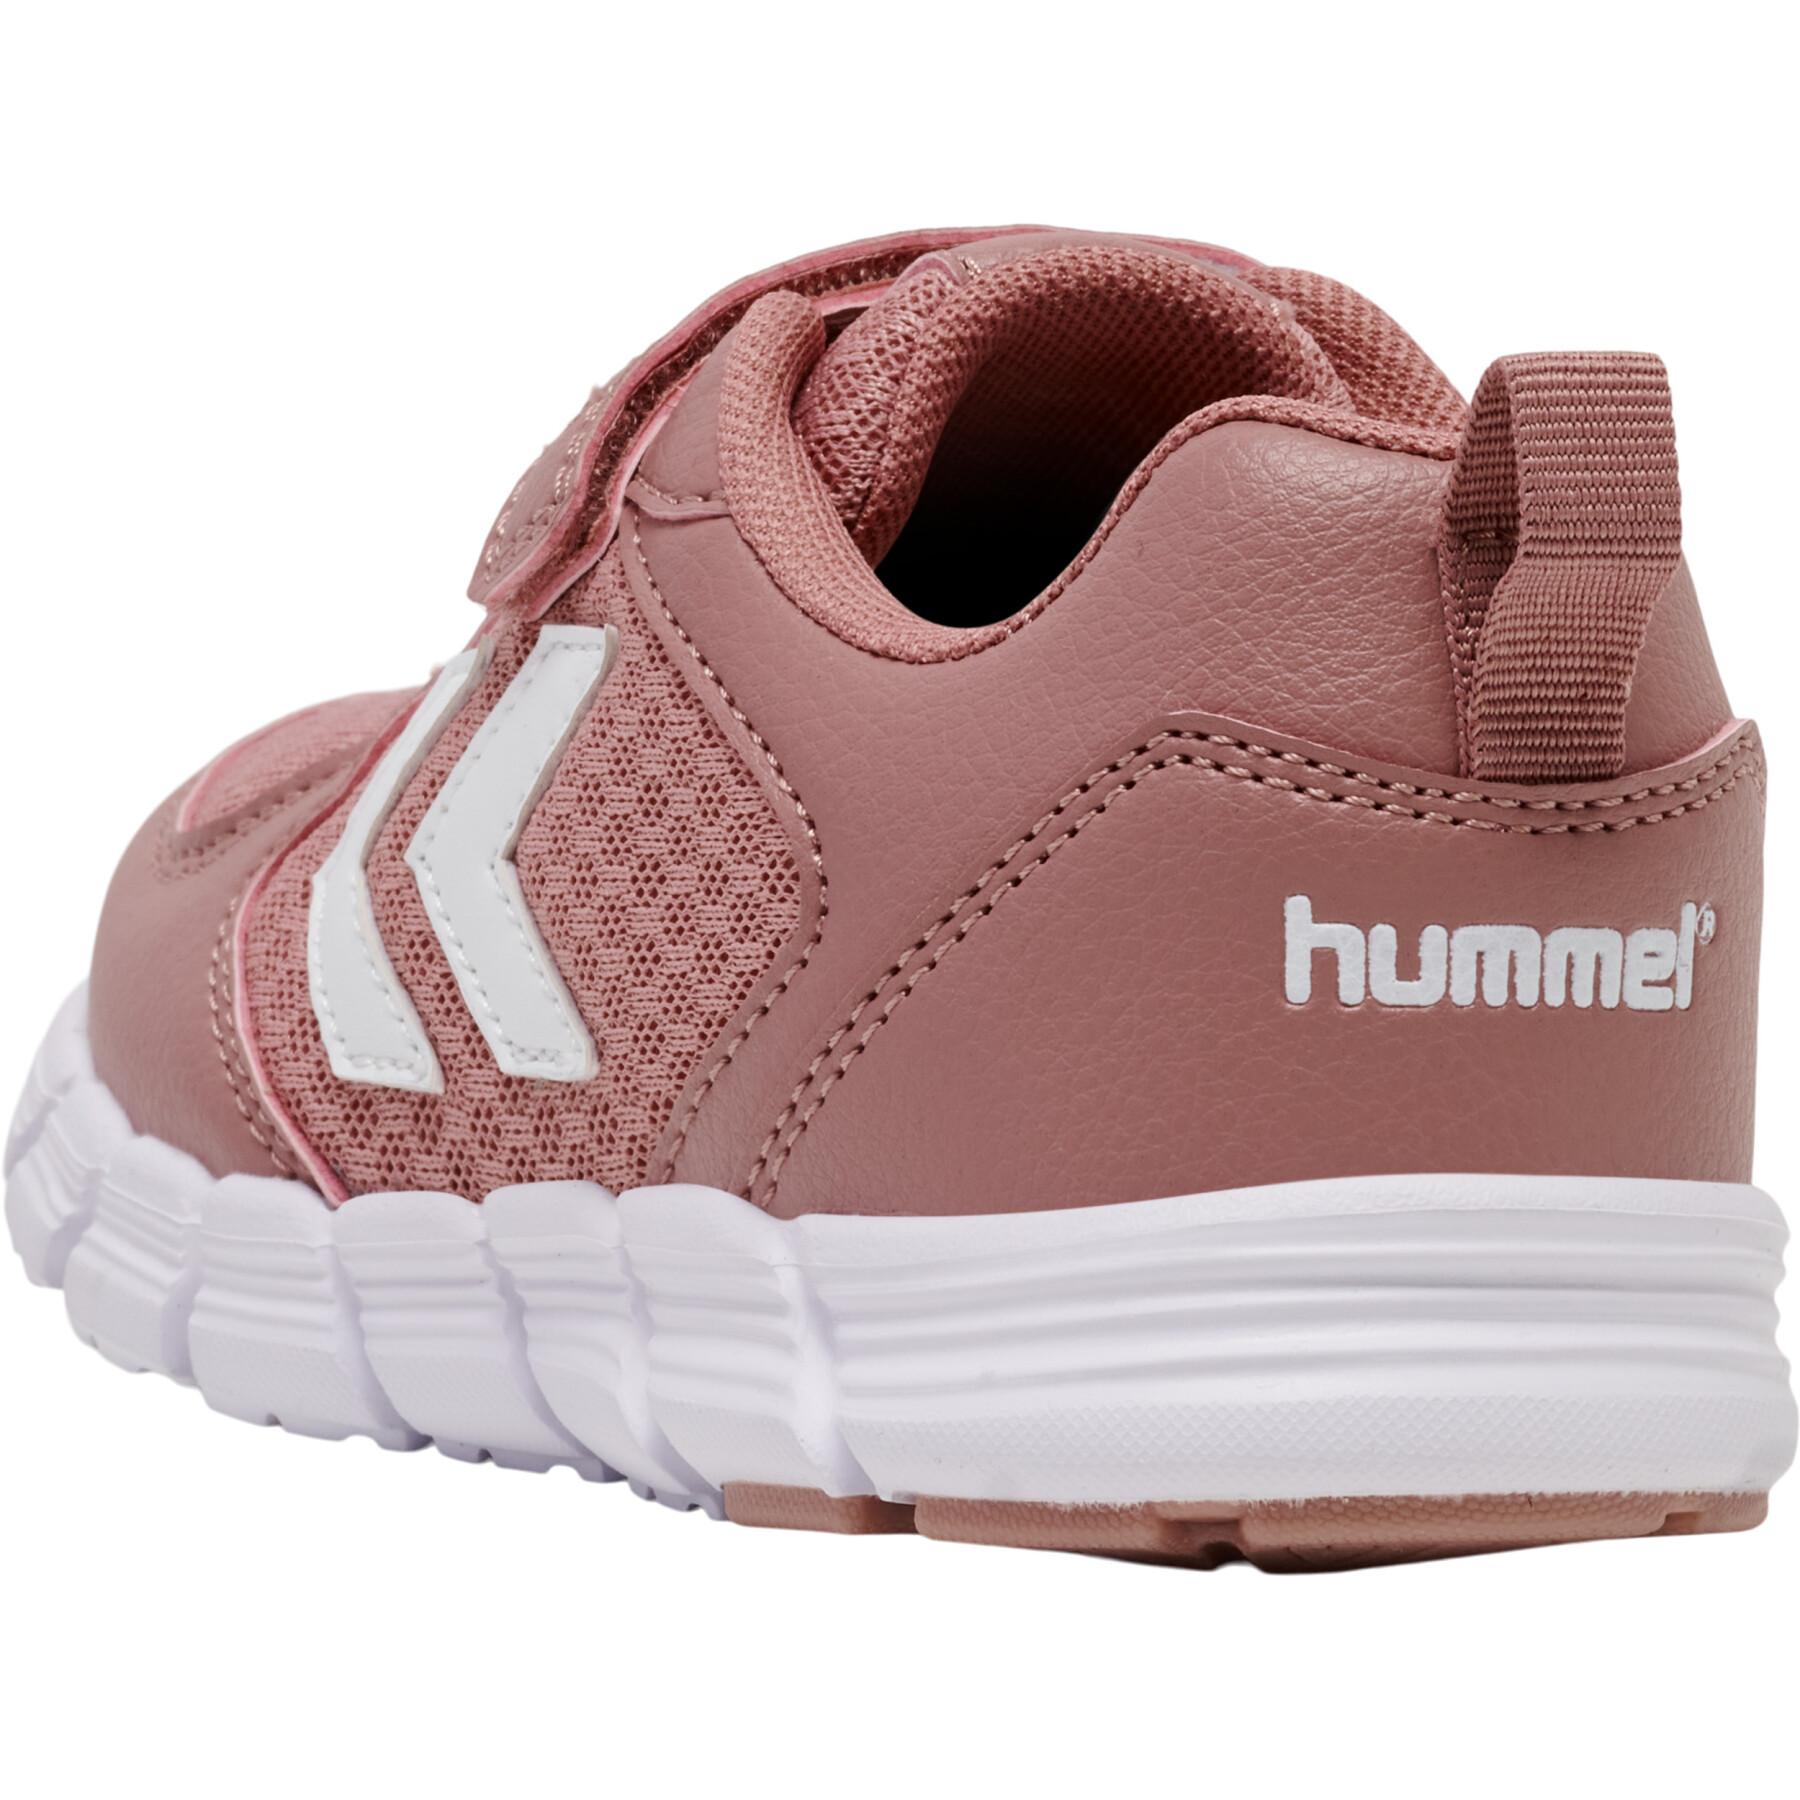 Children's sneakers Hummel Speed